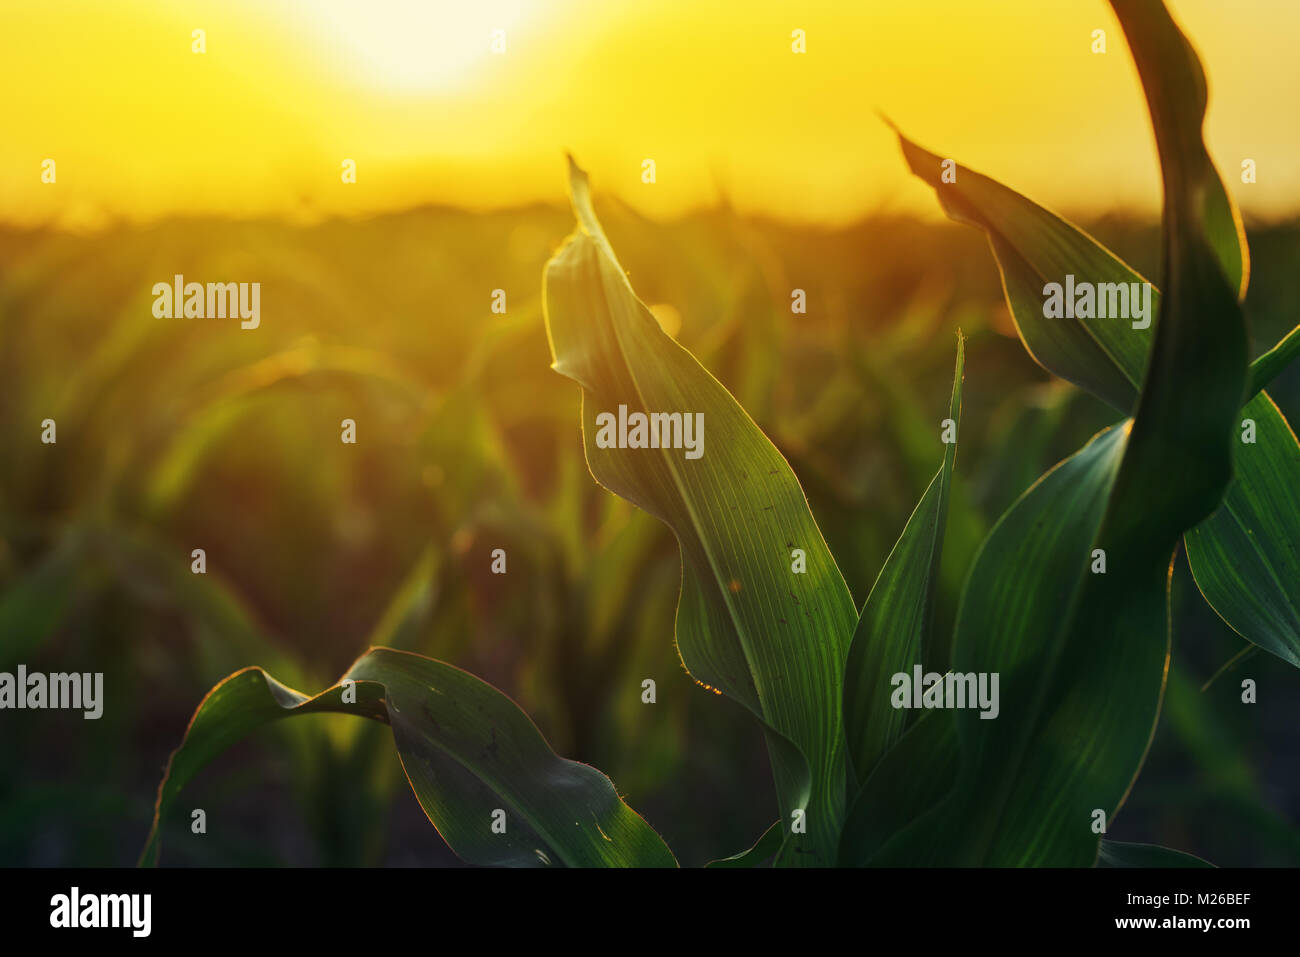 Plantation de maïs dans le coucher du soleil, les plantes de maïs growing in field Banque D'Images